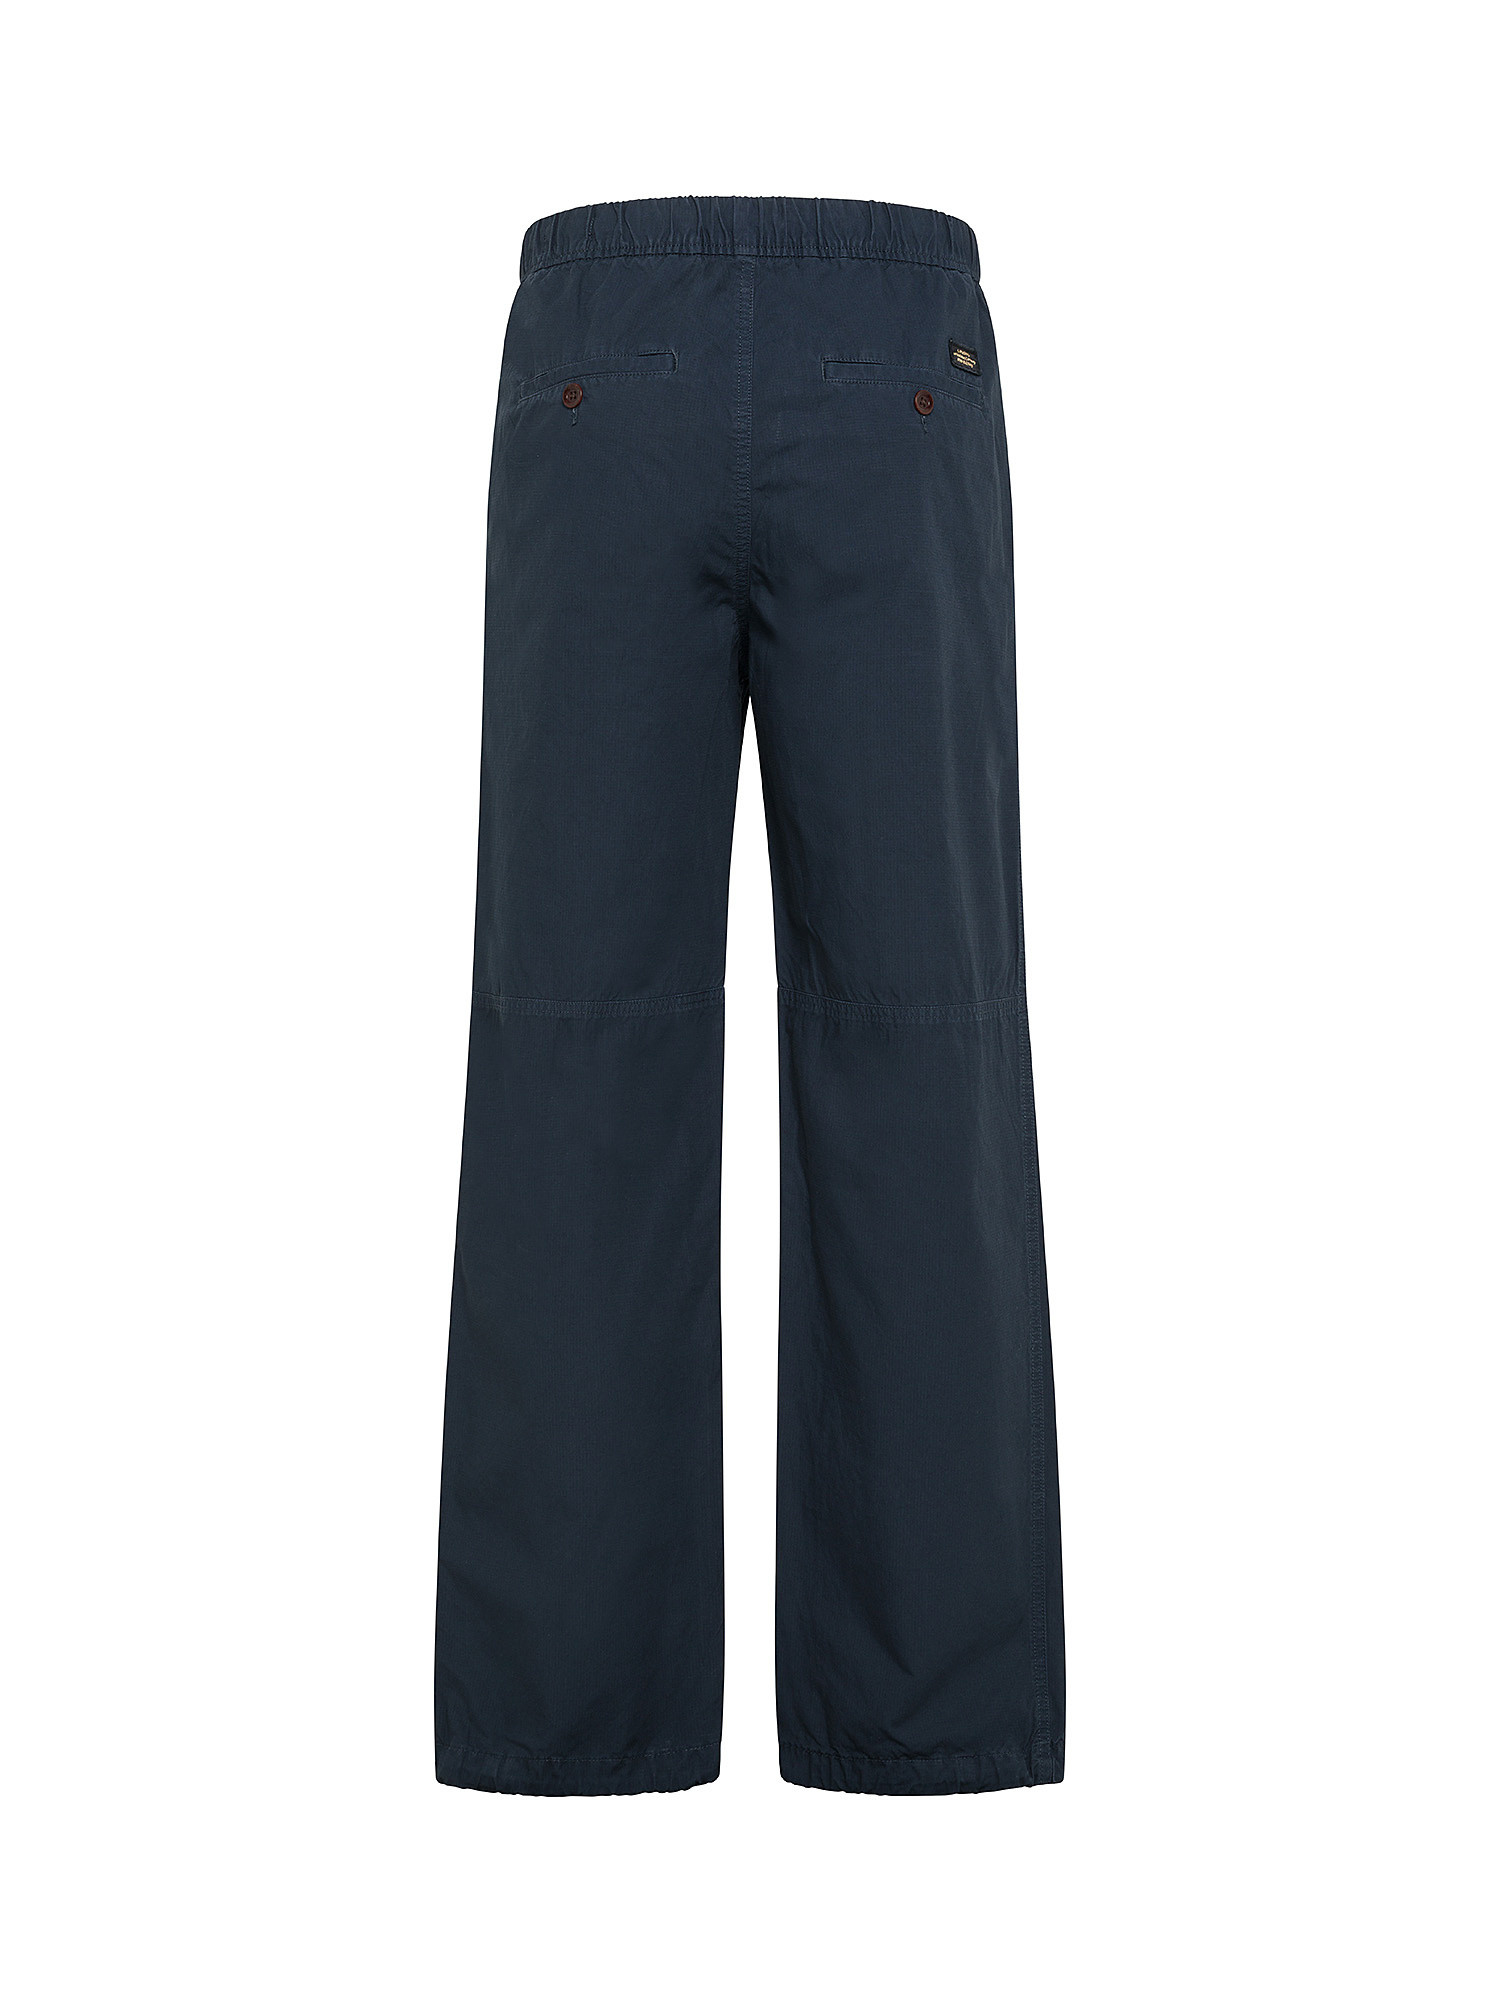 Superdry - Pantaloni in tela di cotone, Blu, large image number 1